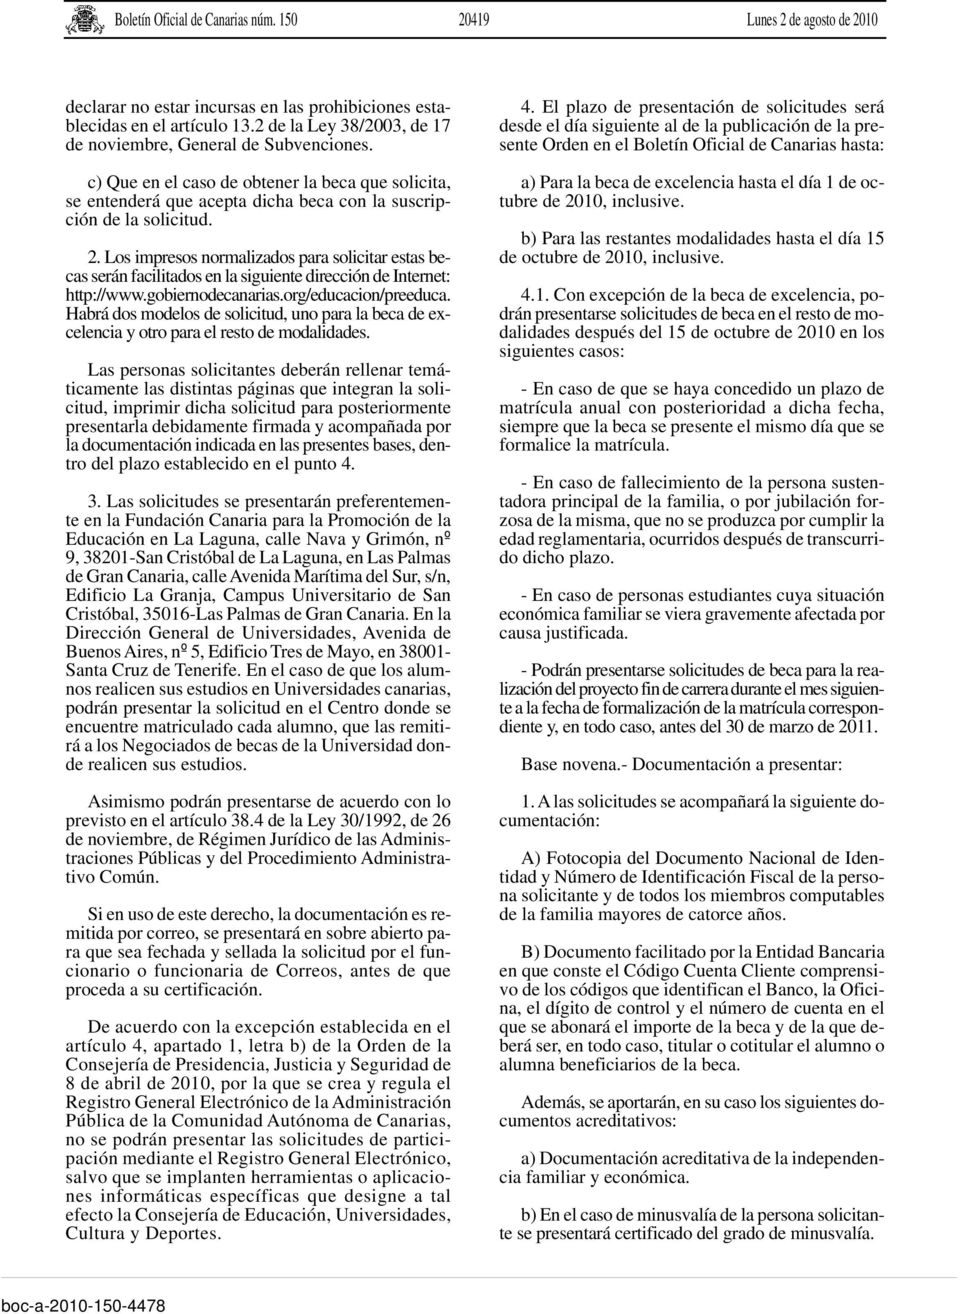 Los impresos normalizados para solicitar estas becas serán facilitados en la siguiente dirección de Internet: http://www.gobiernodecanarias.org/educacion/preeduca.